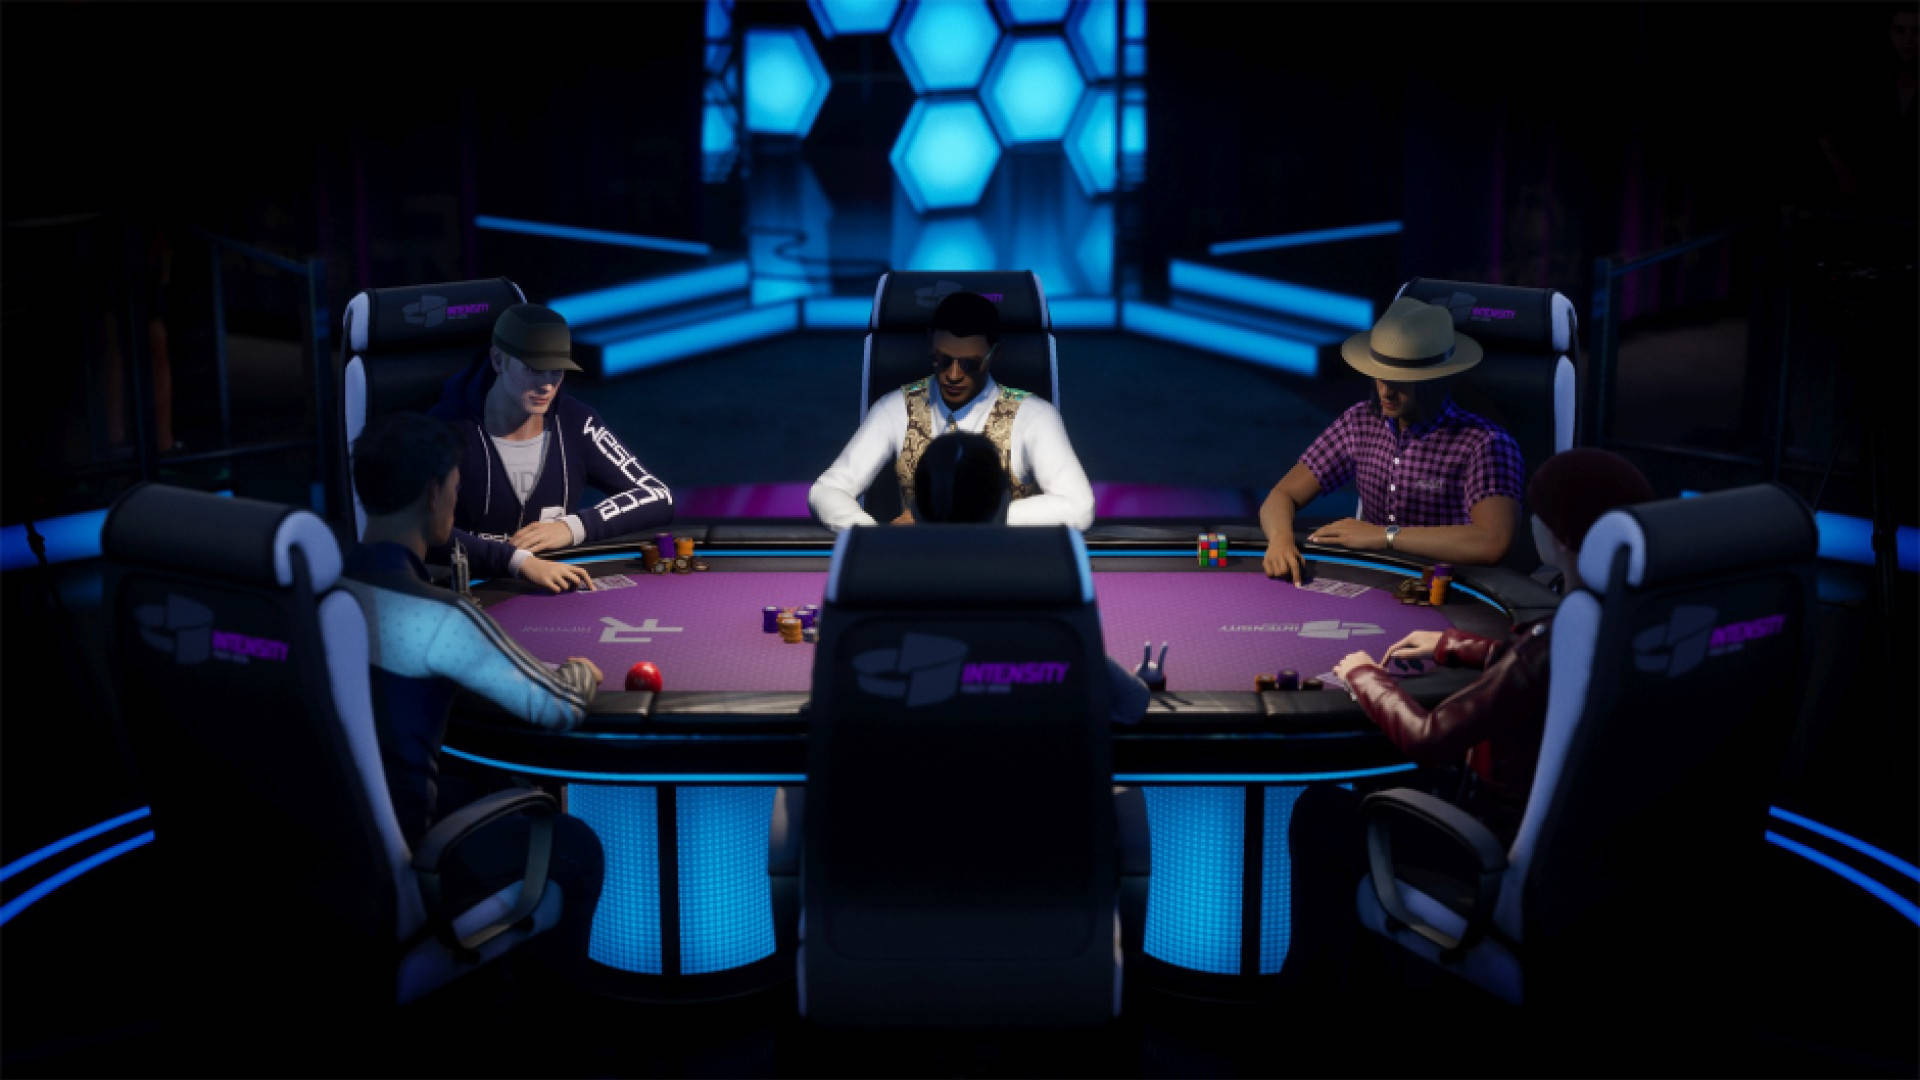 Pokertisch Im Videospiel Wallpaper